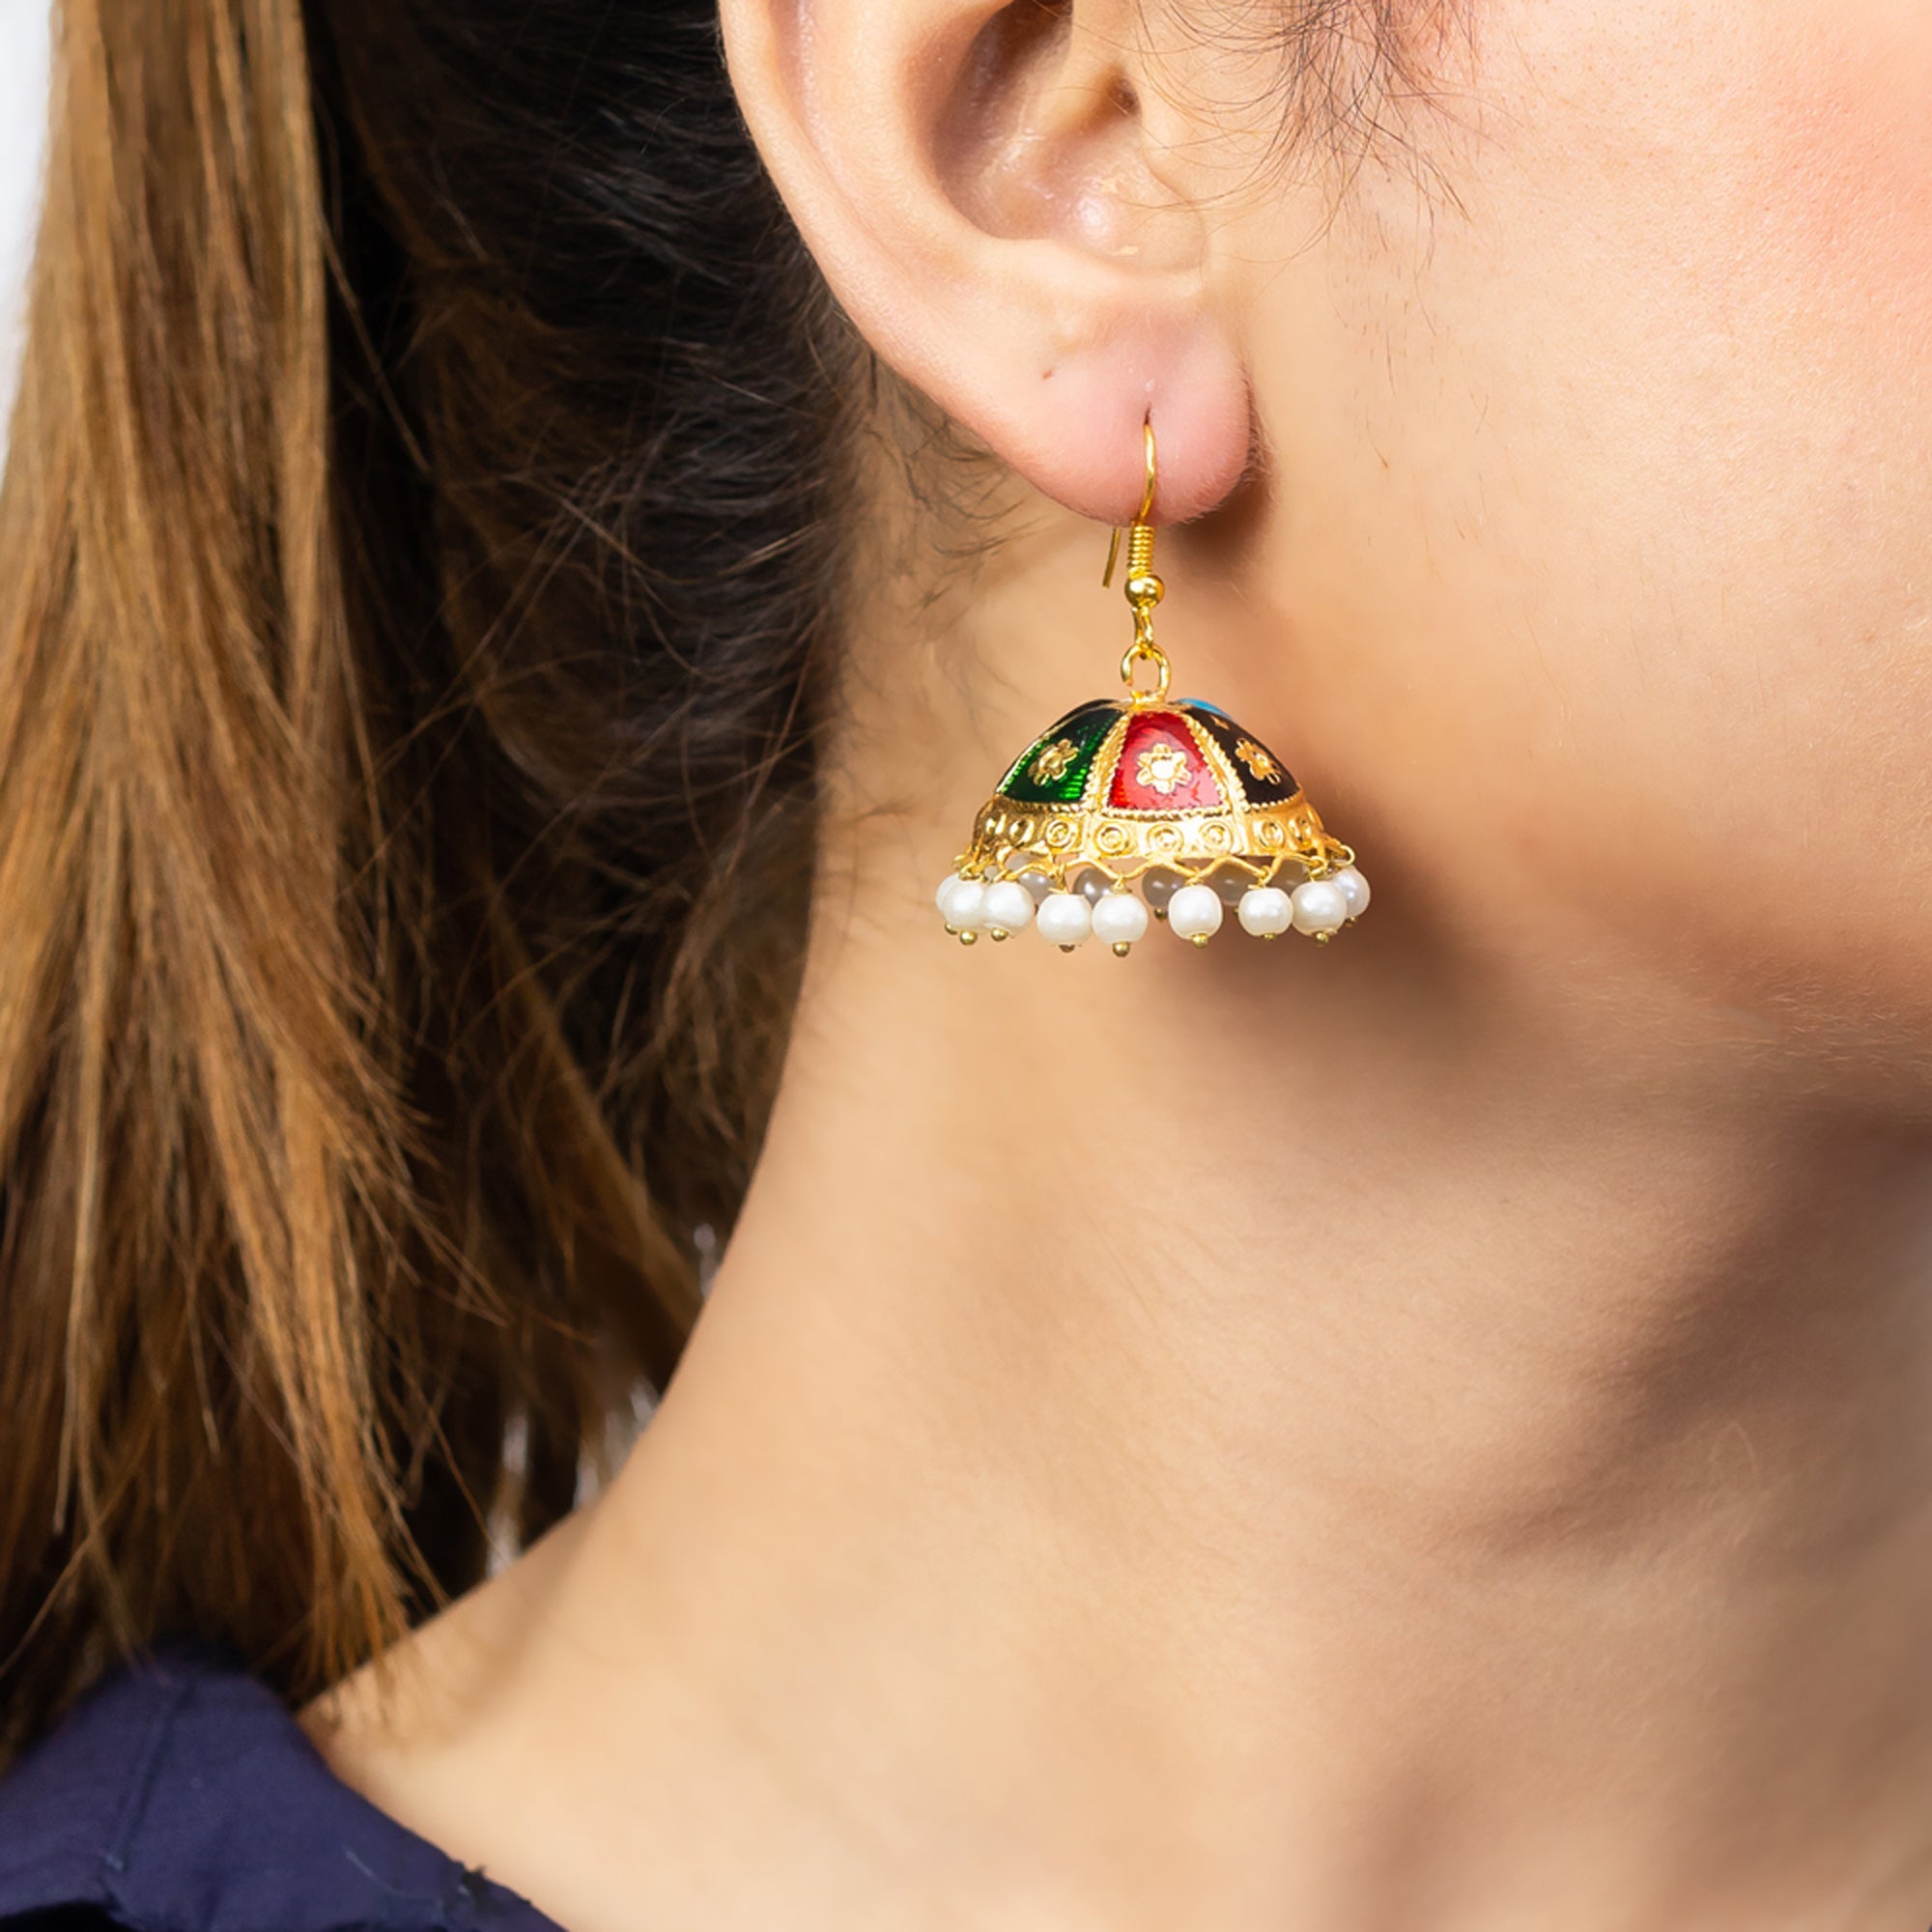 Tiny Multi-Color Charming Earrings For Women/Girl